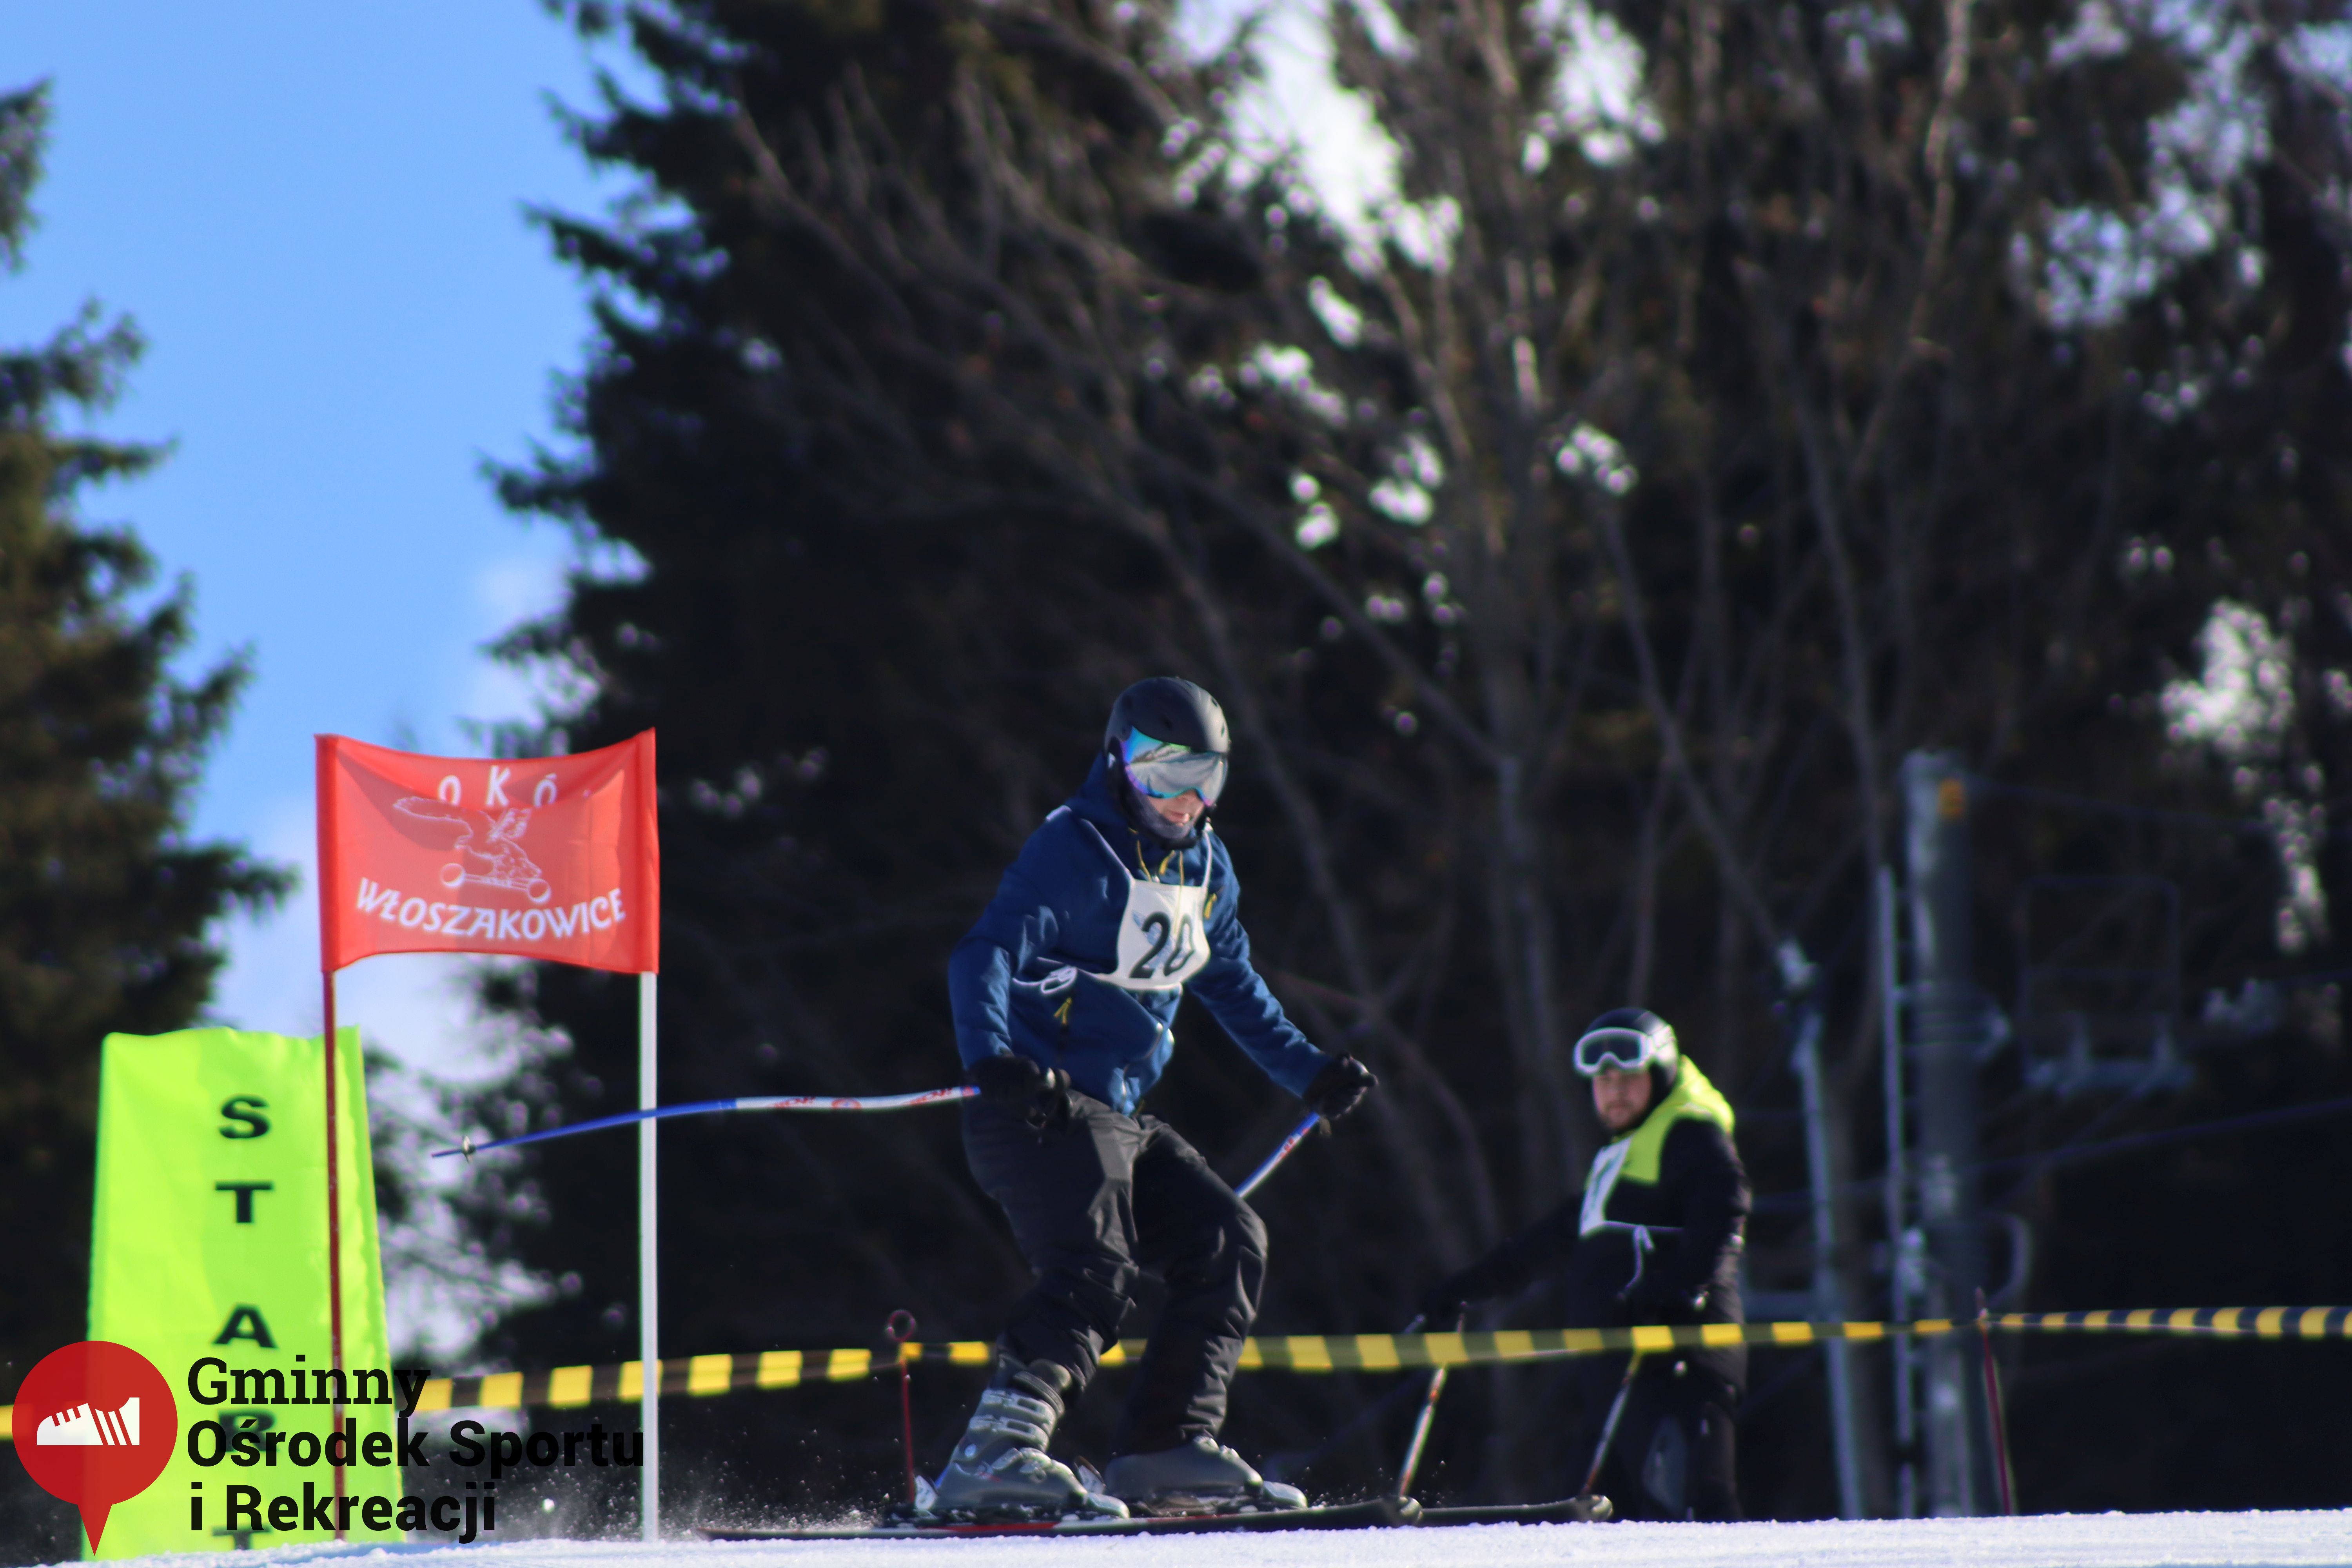 2022.02.12 - 18. Mistrzostwa Gminy Woszakowice w narciarstwie053.jpg - 1,20 MB